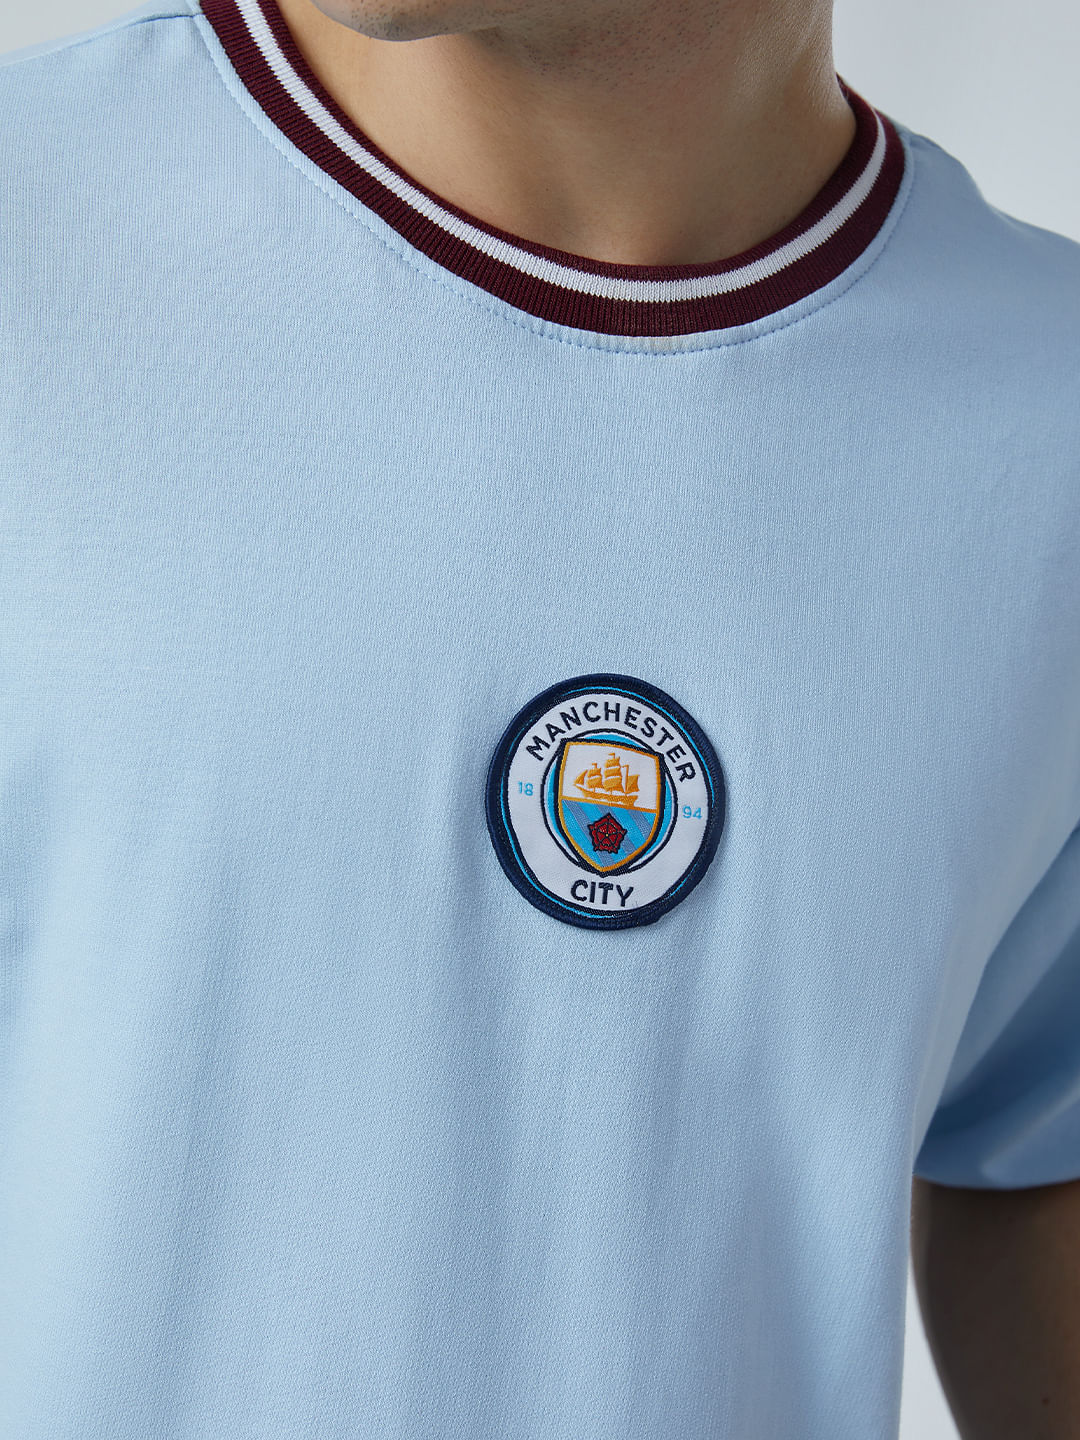 Billy ged Præstation strøm Buy Manchester City: Match Day Oversized T-shirt Online